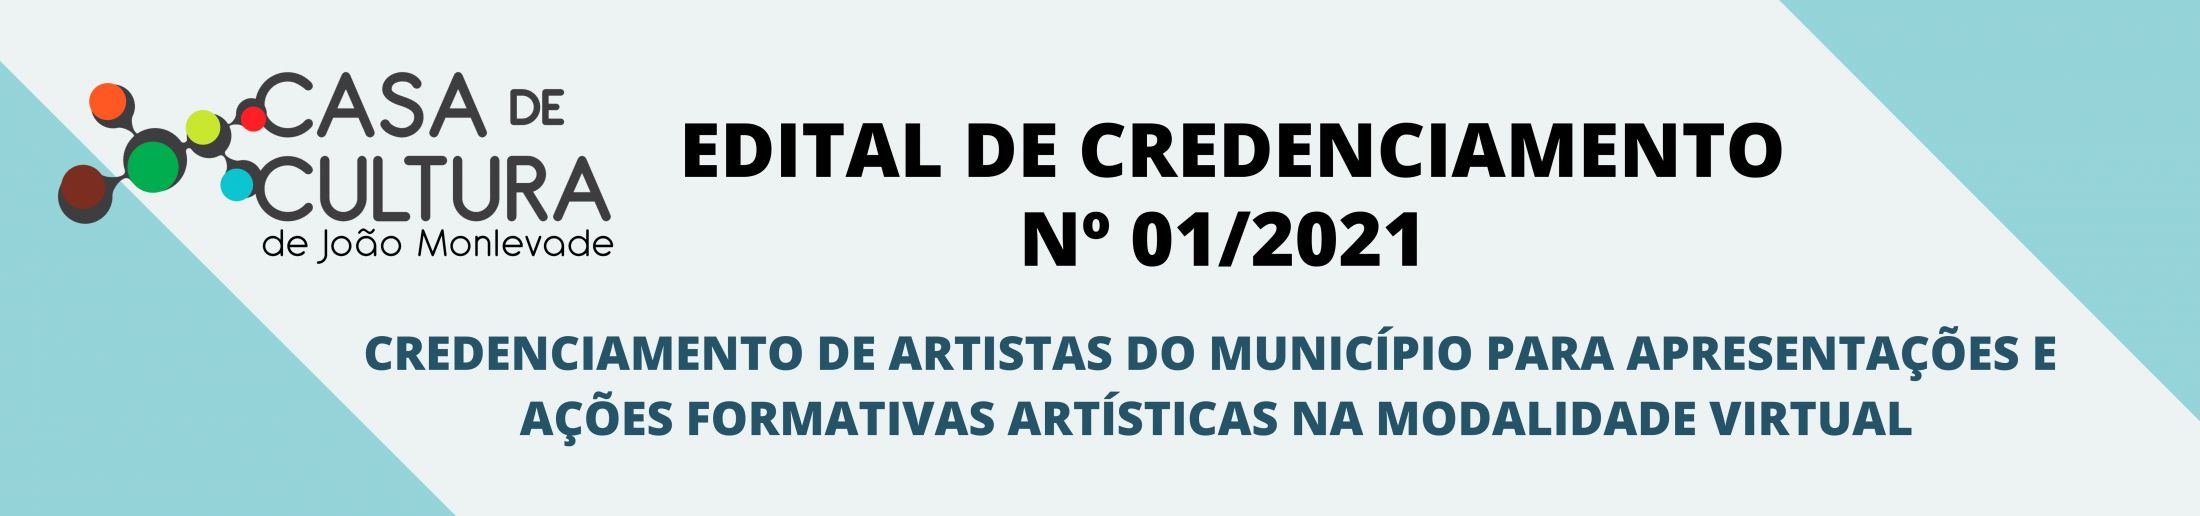 EDITAL DE CREDENCIAMENTO Nº 01/2021 - Fundação casa de Cultura